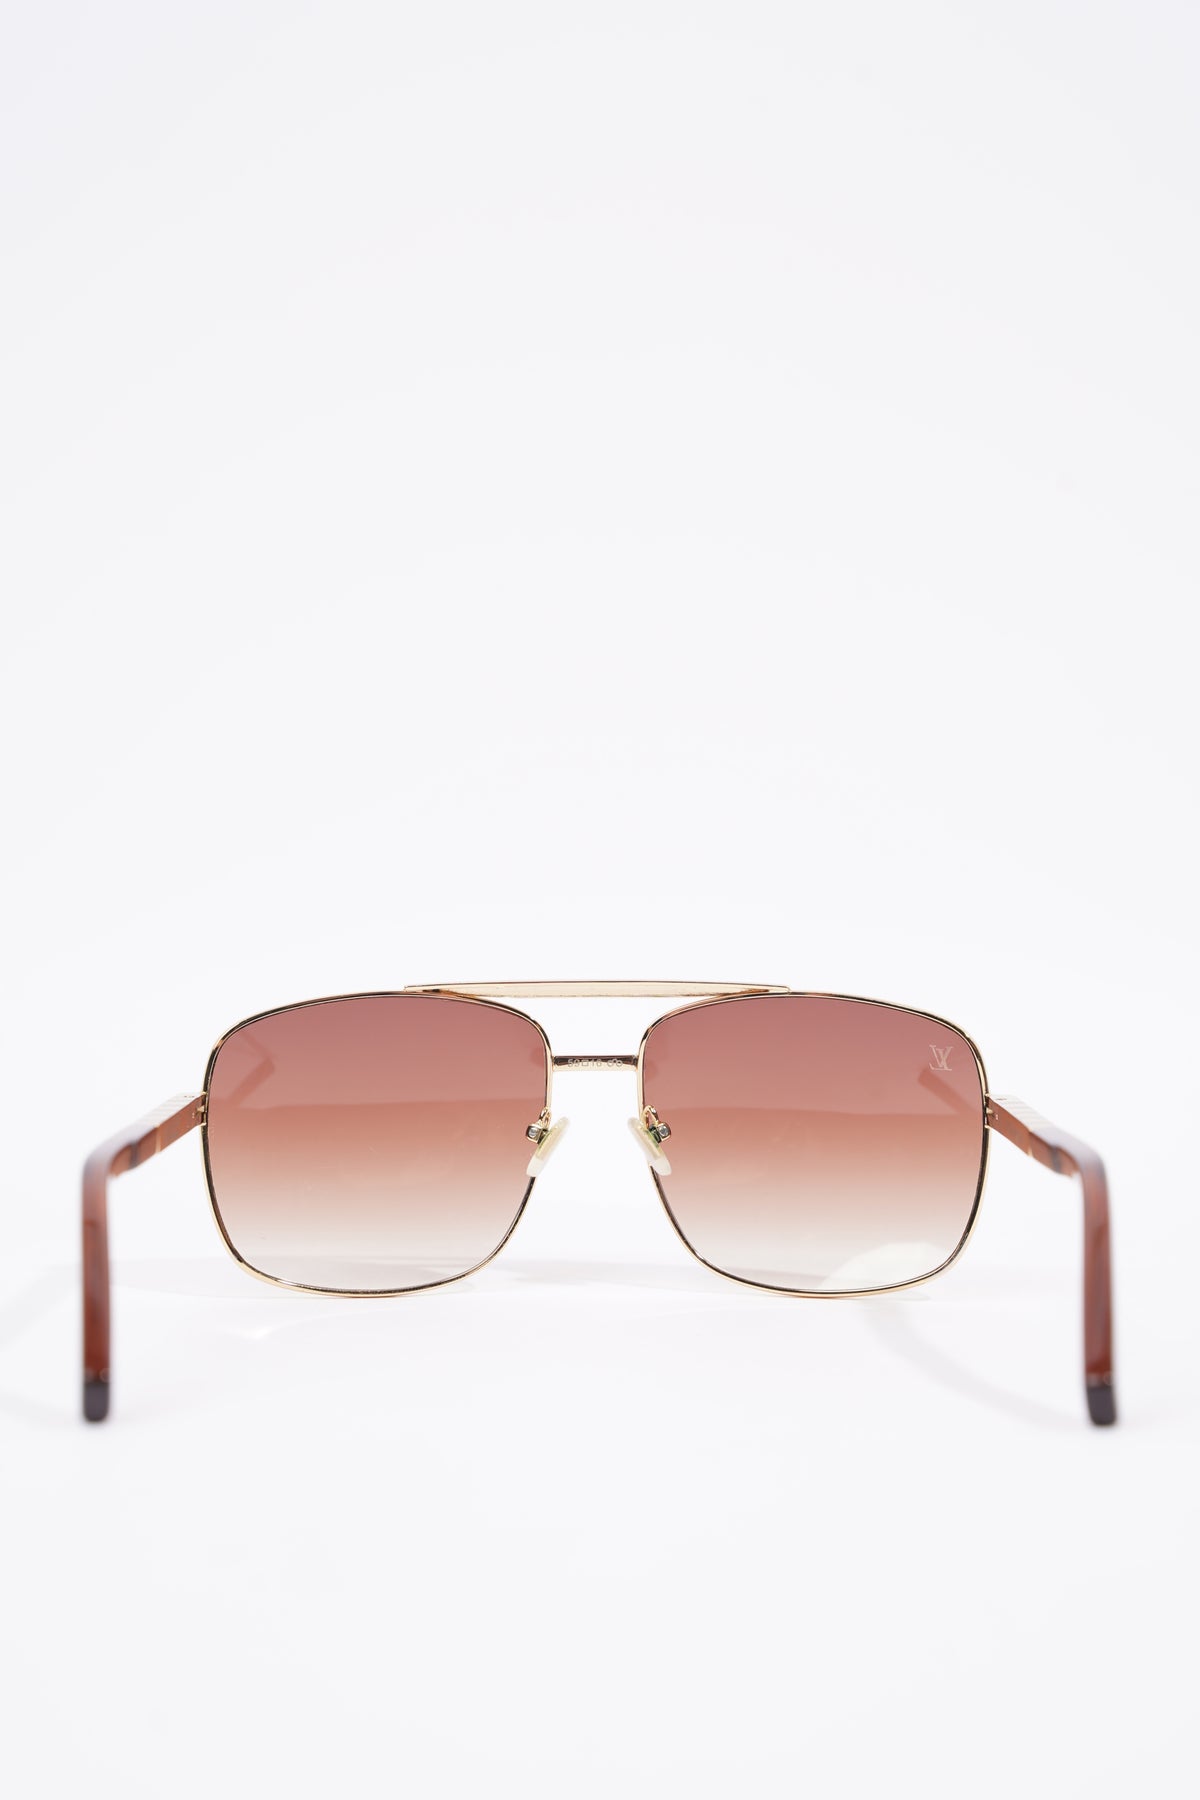 Louis Vuitton Gold Sunglasses for Men for sale